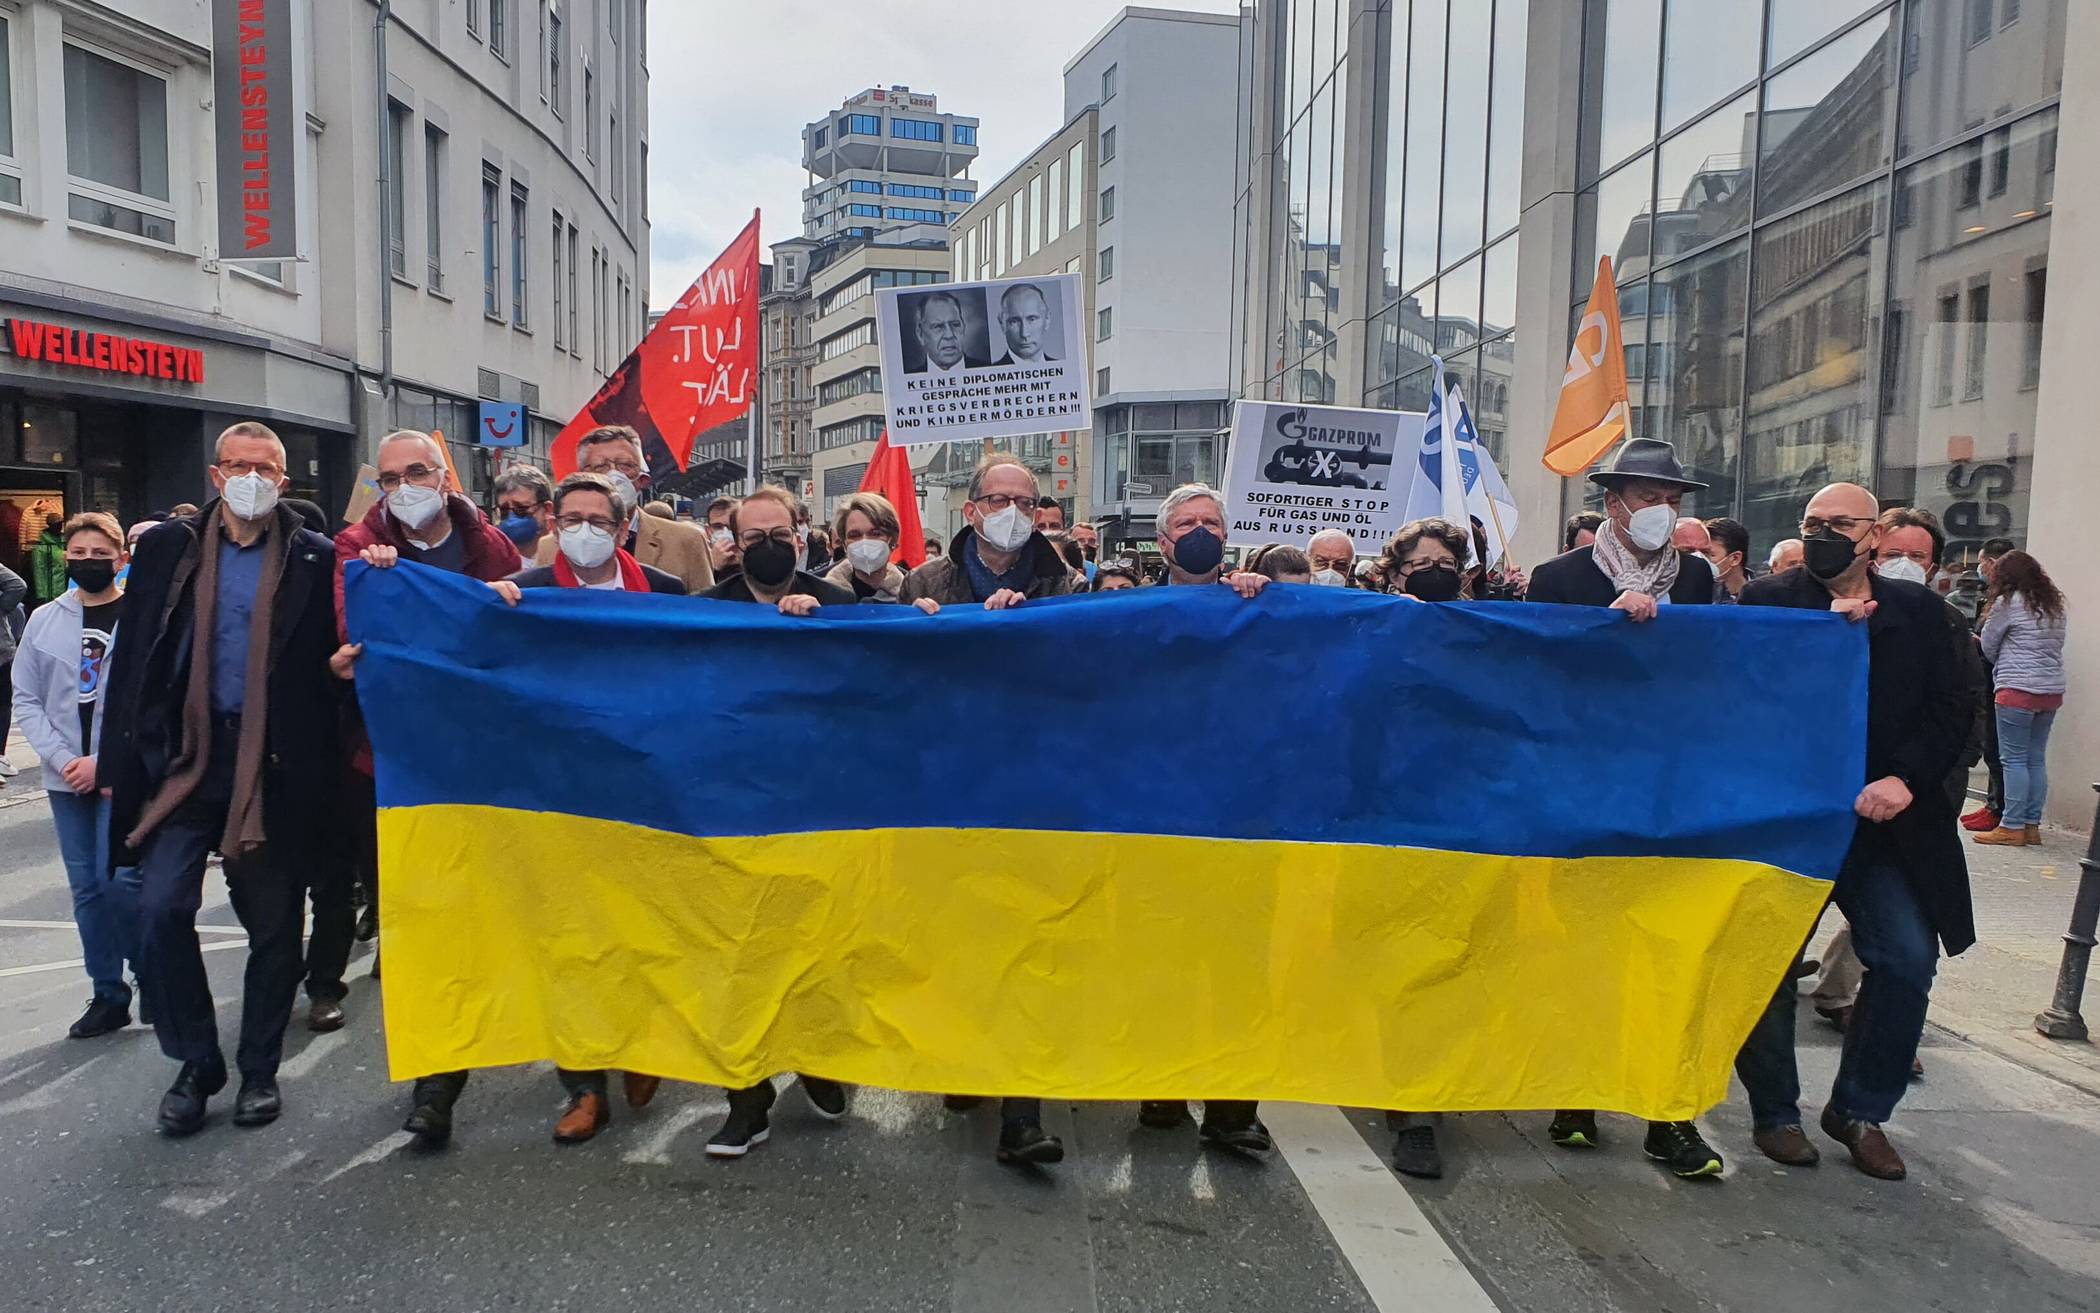  Rund 1.400 Wuppertalerinnen und Wuppertaler demonstrierten am 12. April in Elberfeld für Solidarität mit der Ukraine und einen Stopp des russischen Krieges. 